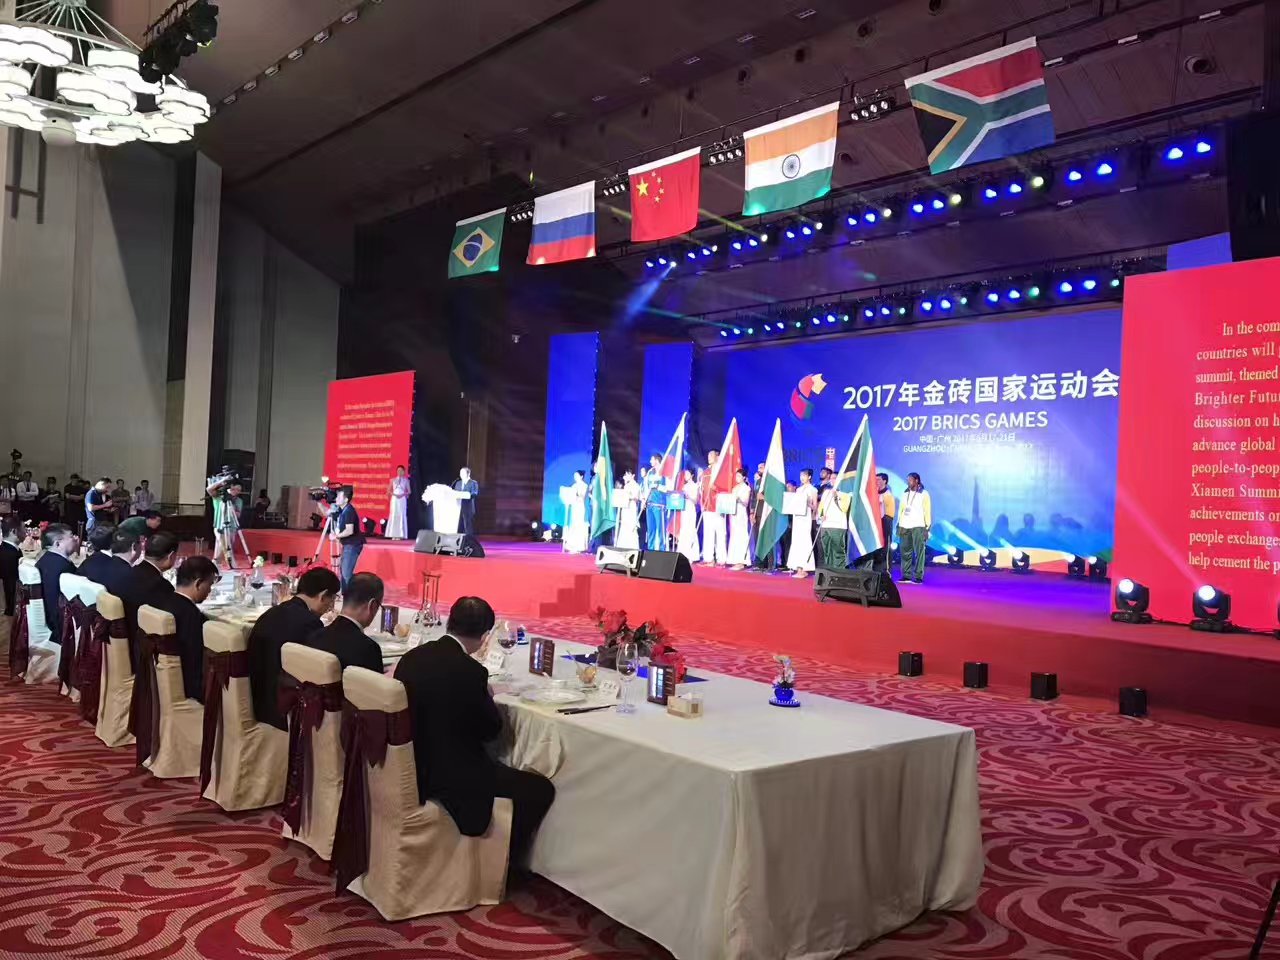 2017年金砖国家运动在与双鱼体育共建乒乓球体验馆的广州白云国际会议中心开幕